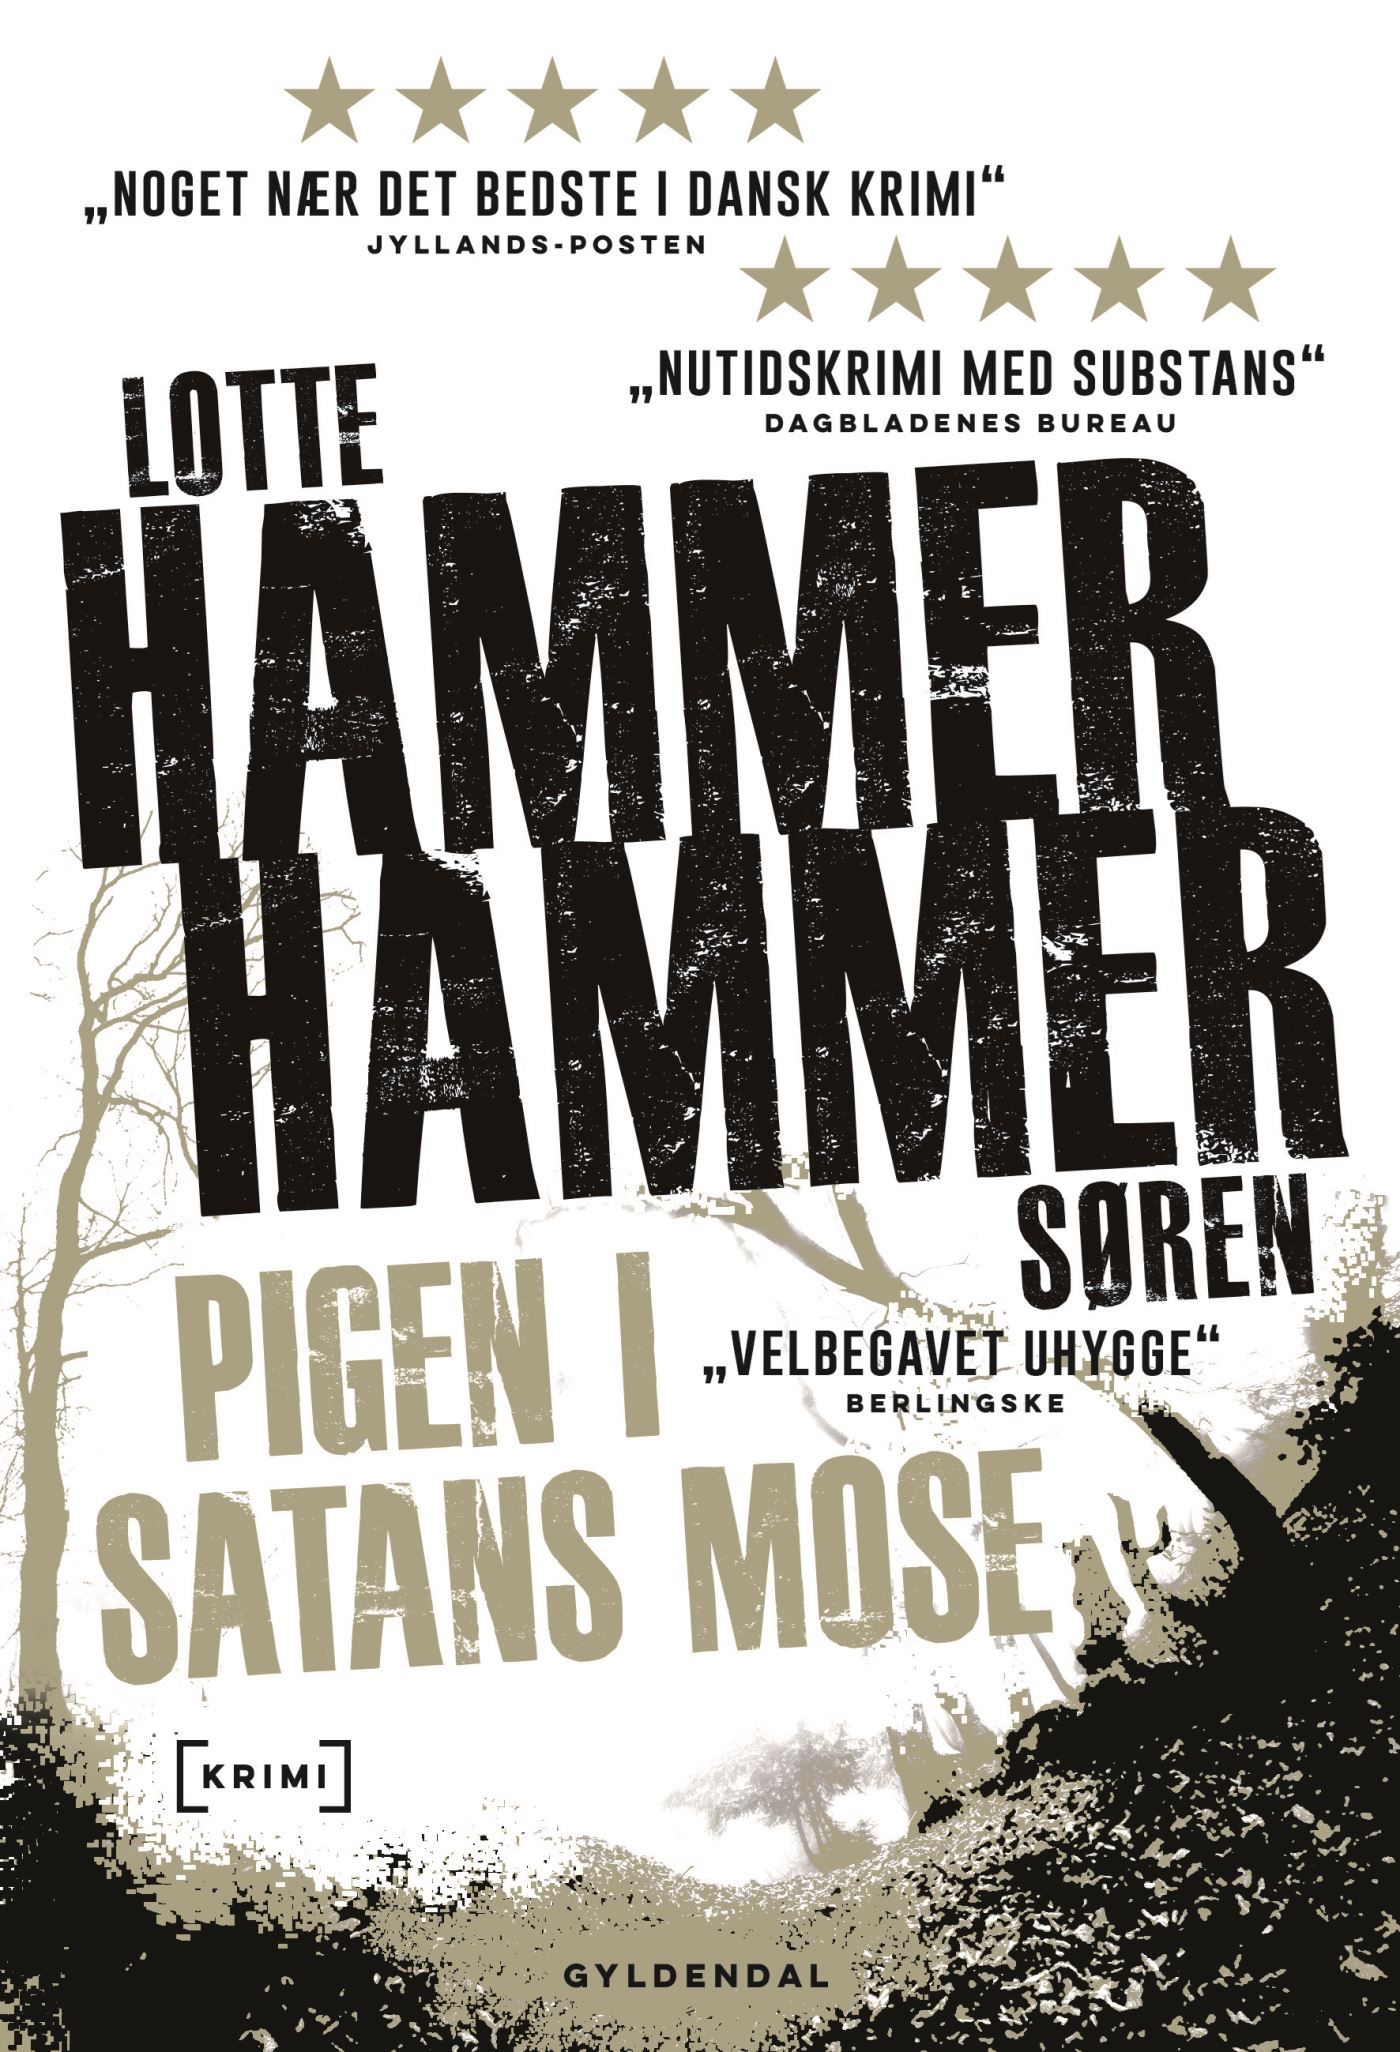 Pigen i Satans Mose, audiobook by Lotte og Søren Hammer